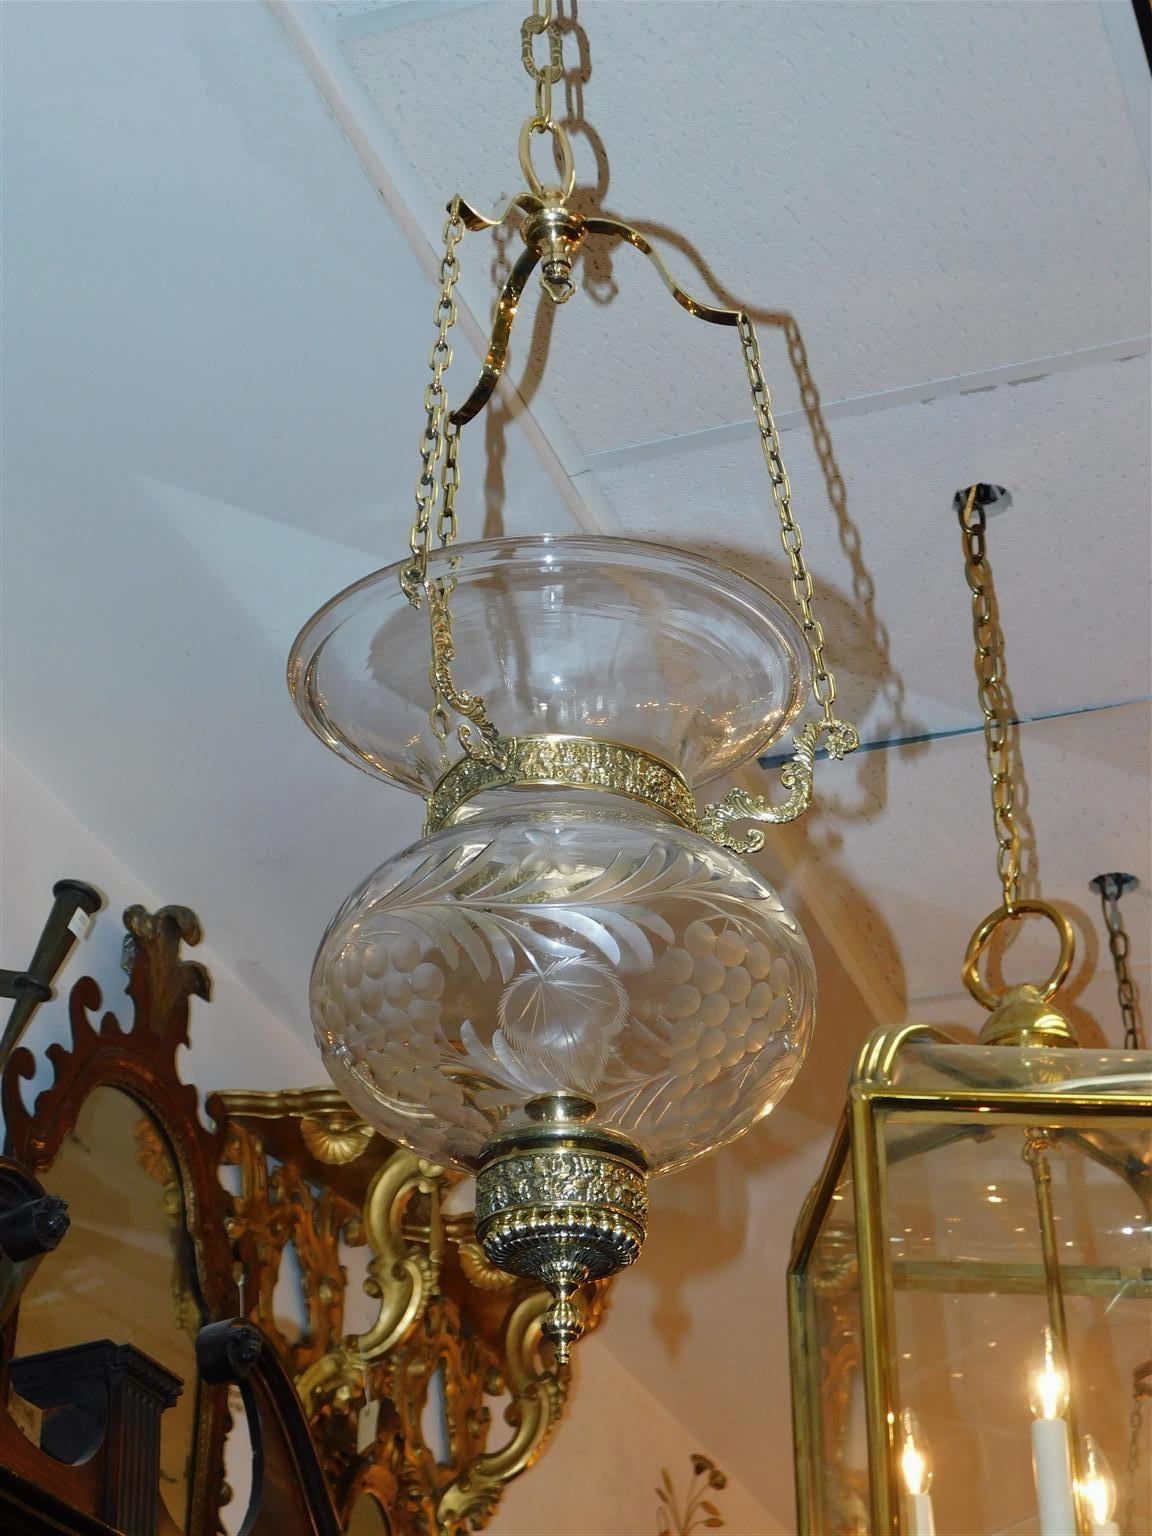 Lanterne d'intérieur américaine en laiton et verre gravé de feuillage, avec trois bras décoratifs à volutes, motif de vigne, et finitions en perles. Début du 19ème siècle. La cloche est alimentée par une bougie, mais peut être électrifiée si vous le